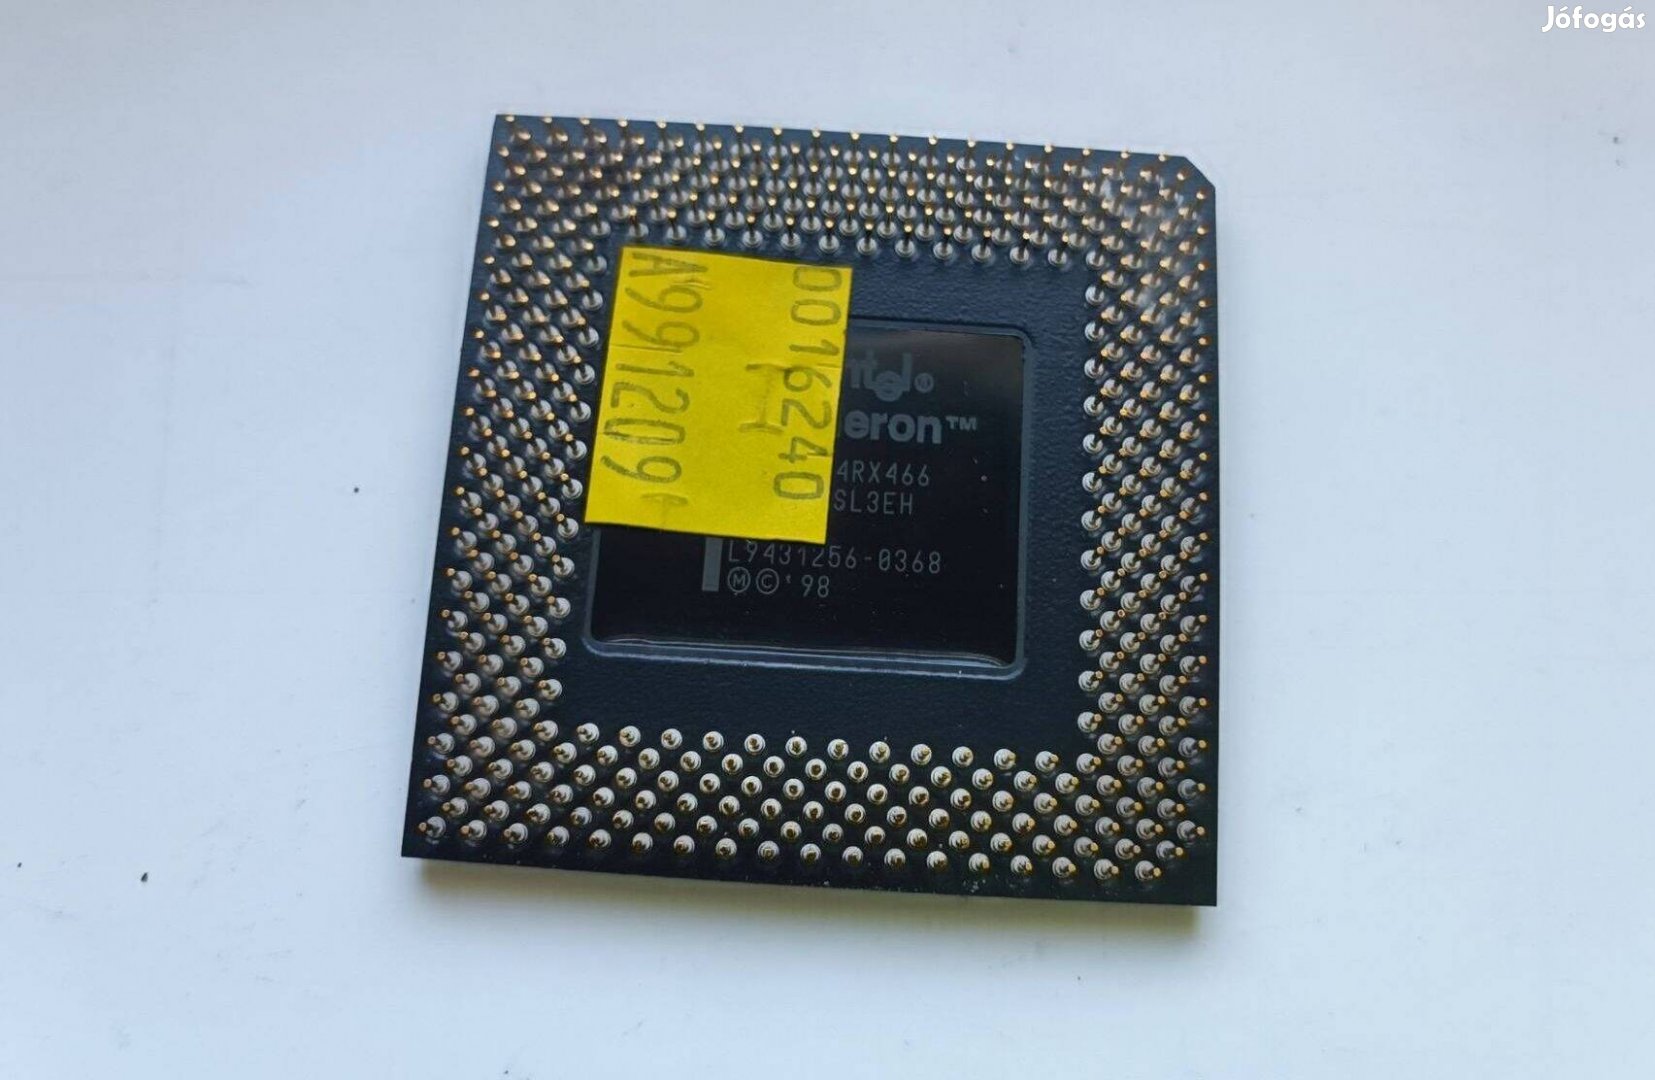 Intel Celeron 466 MHz CPU SL3EH Mendocino